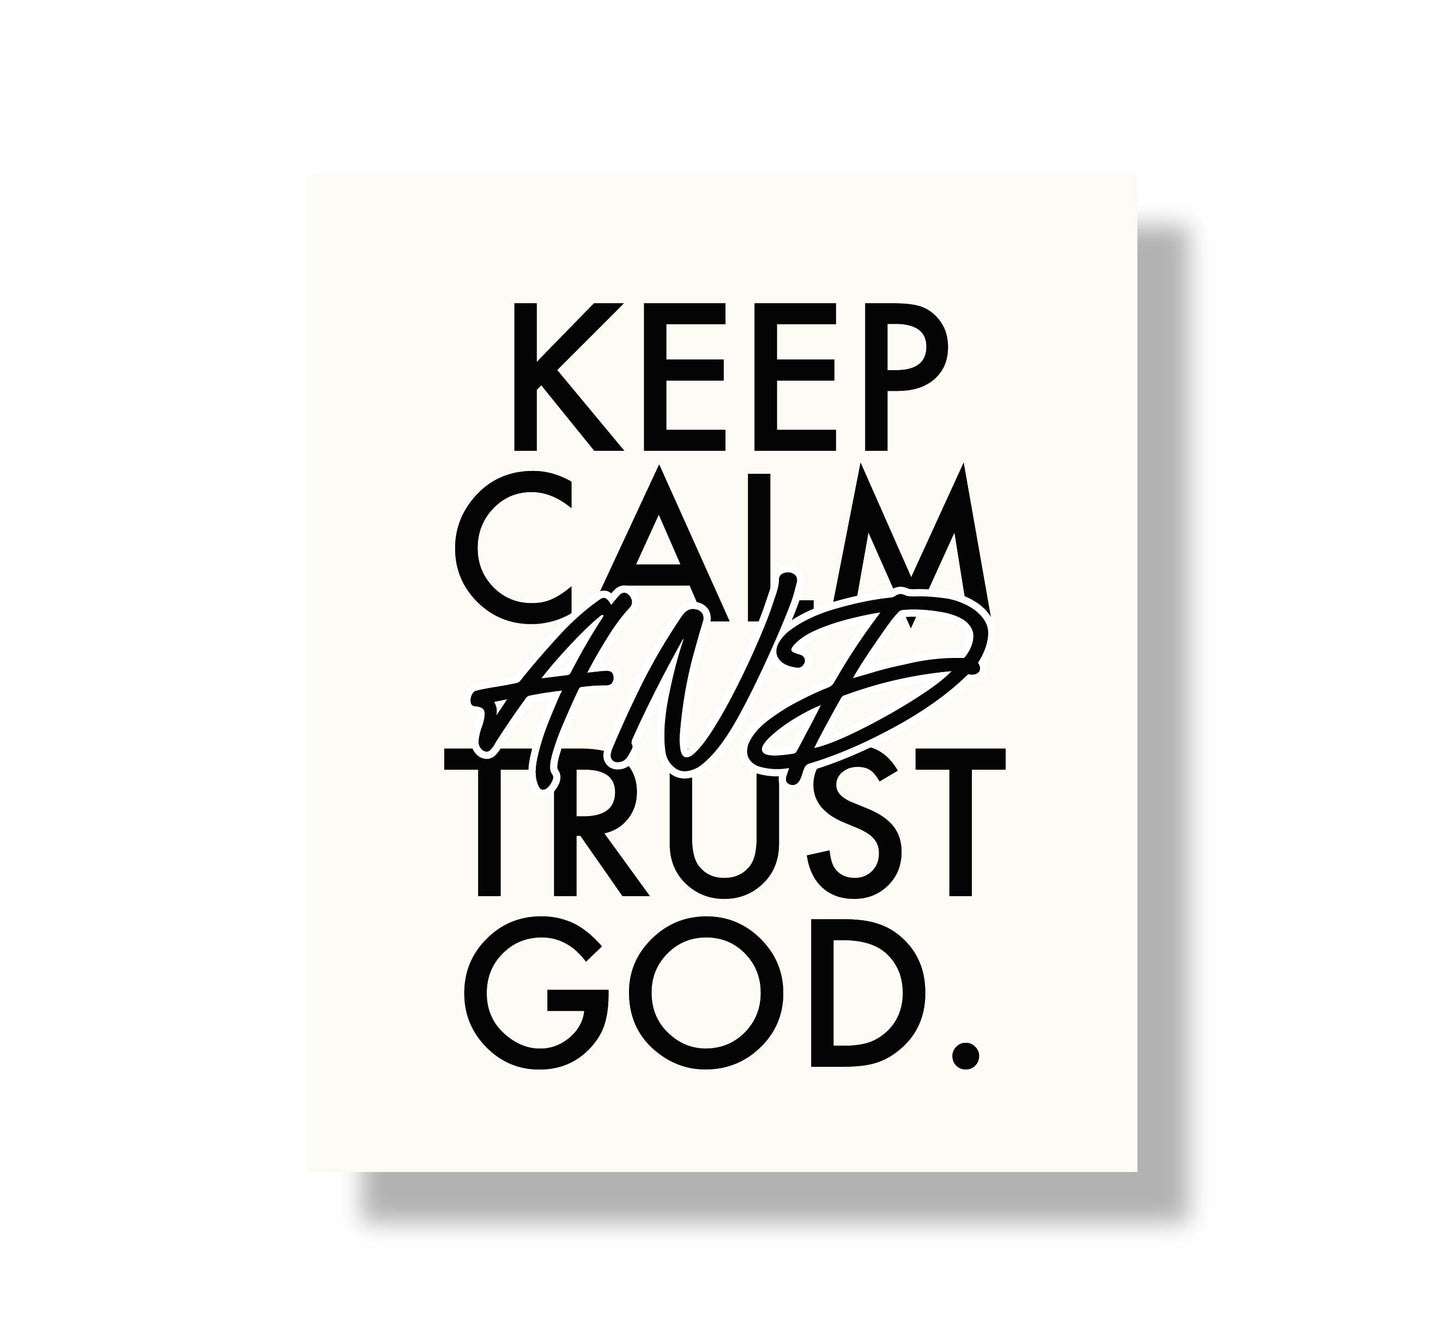 KEEP CALM AND TRUST GOD